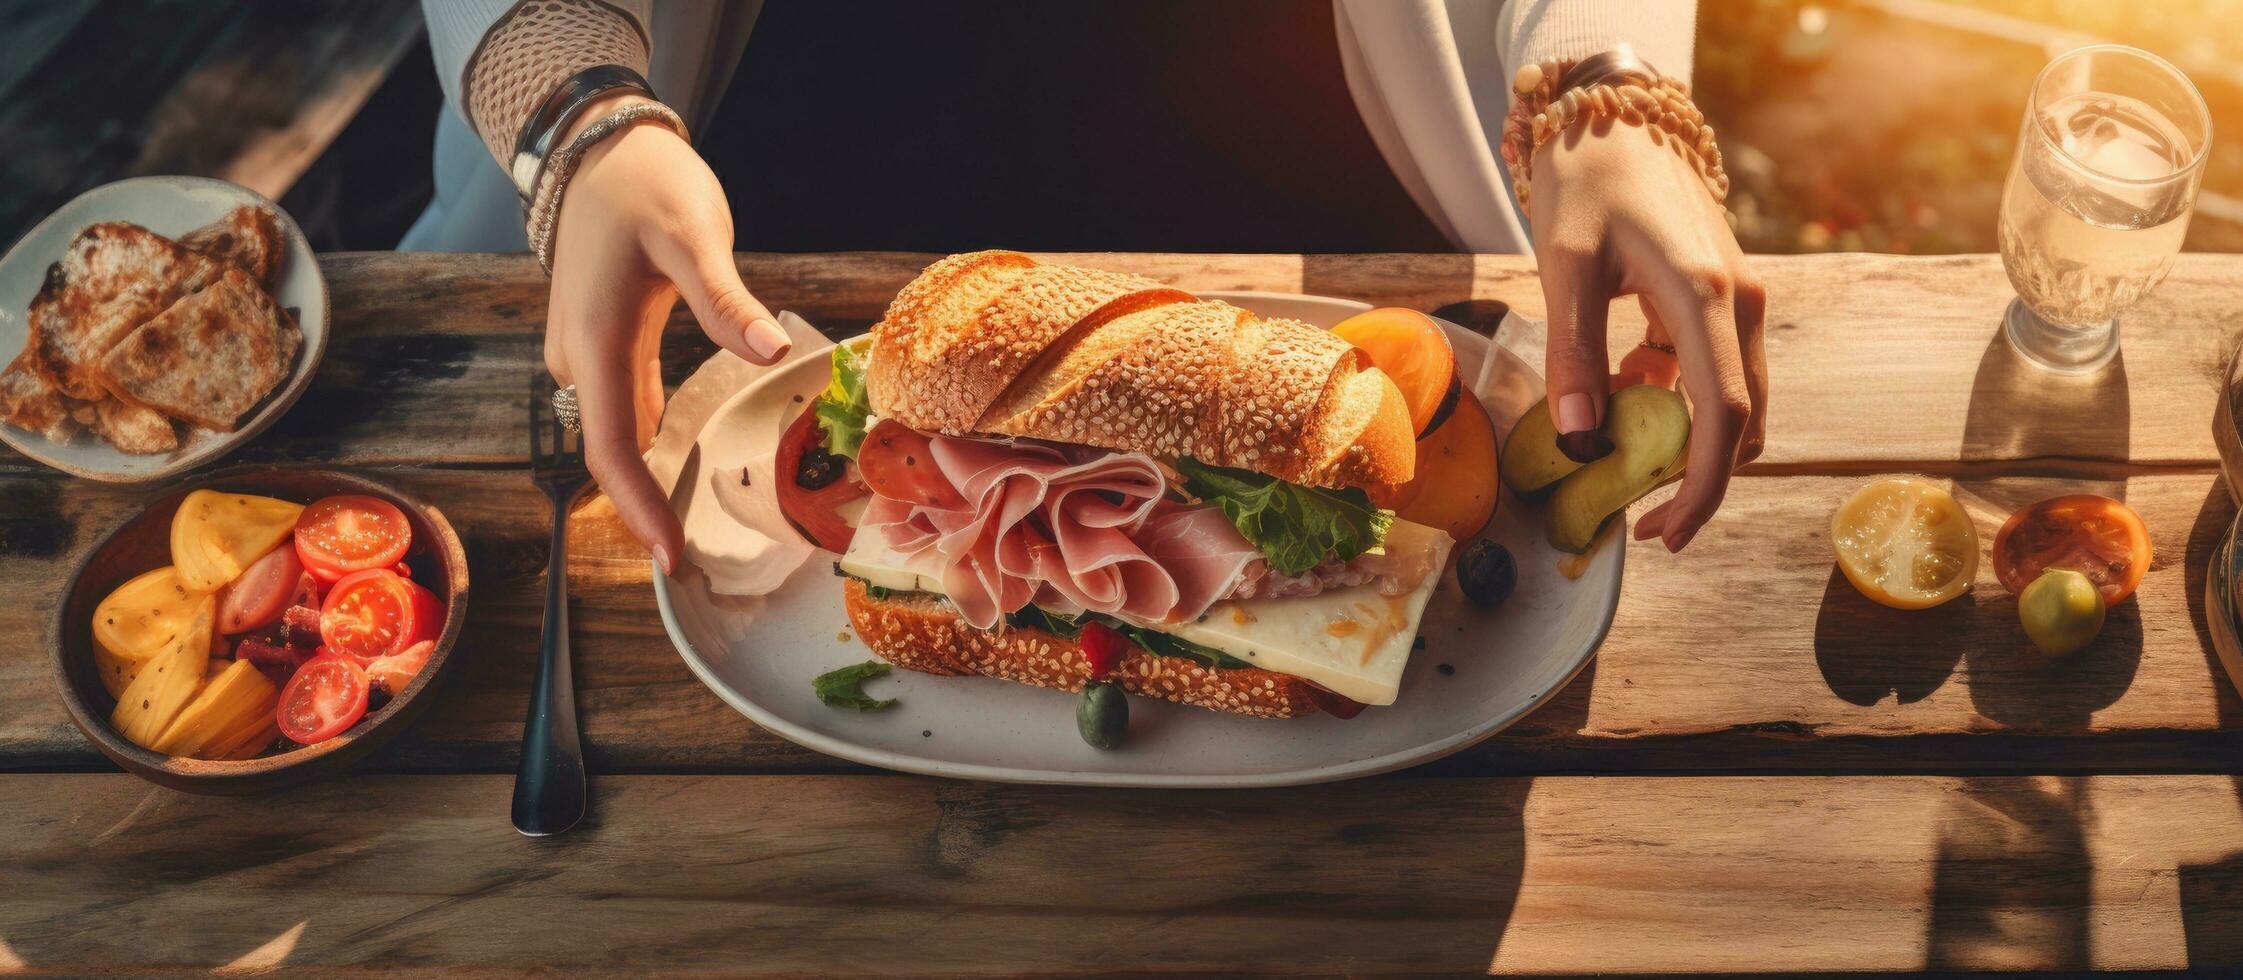 não identificável caucasiano mãos corte sanduíche lado de fora restaurante às pôr do sol jantar conceito foto